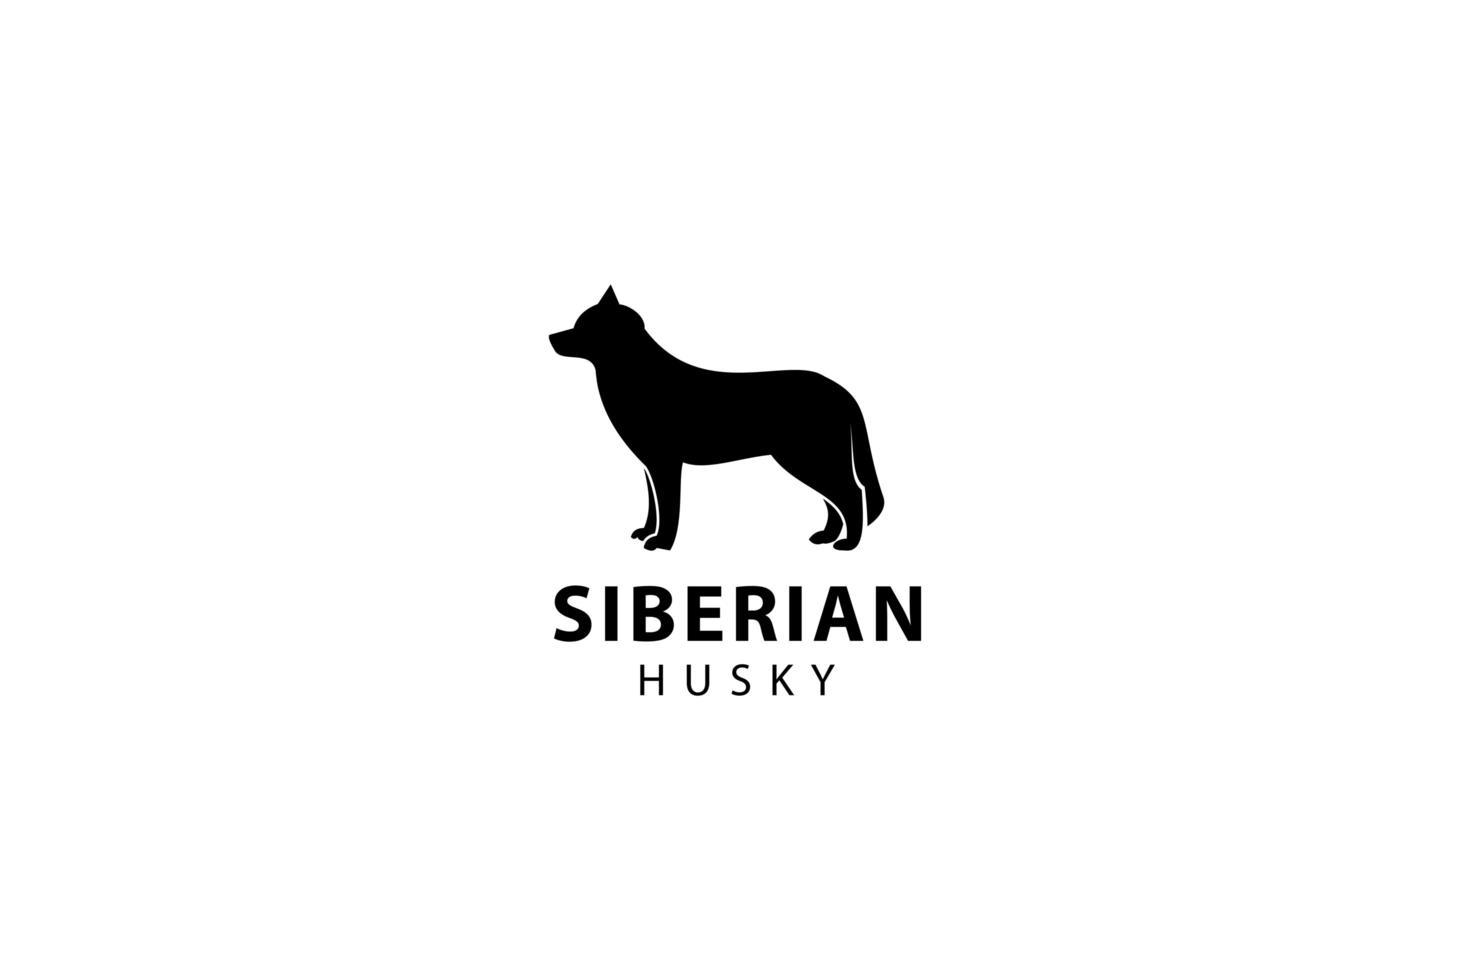 silhueta do husky siberiano, ilustração do ícone do vetor